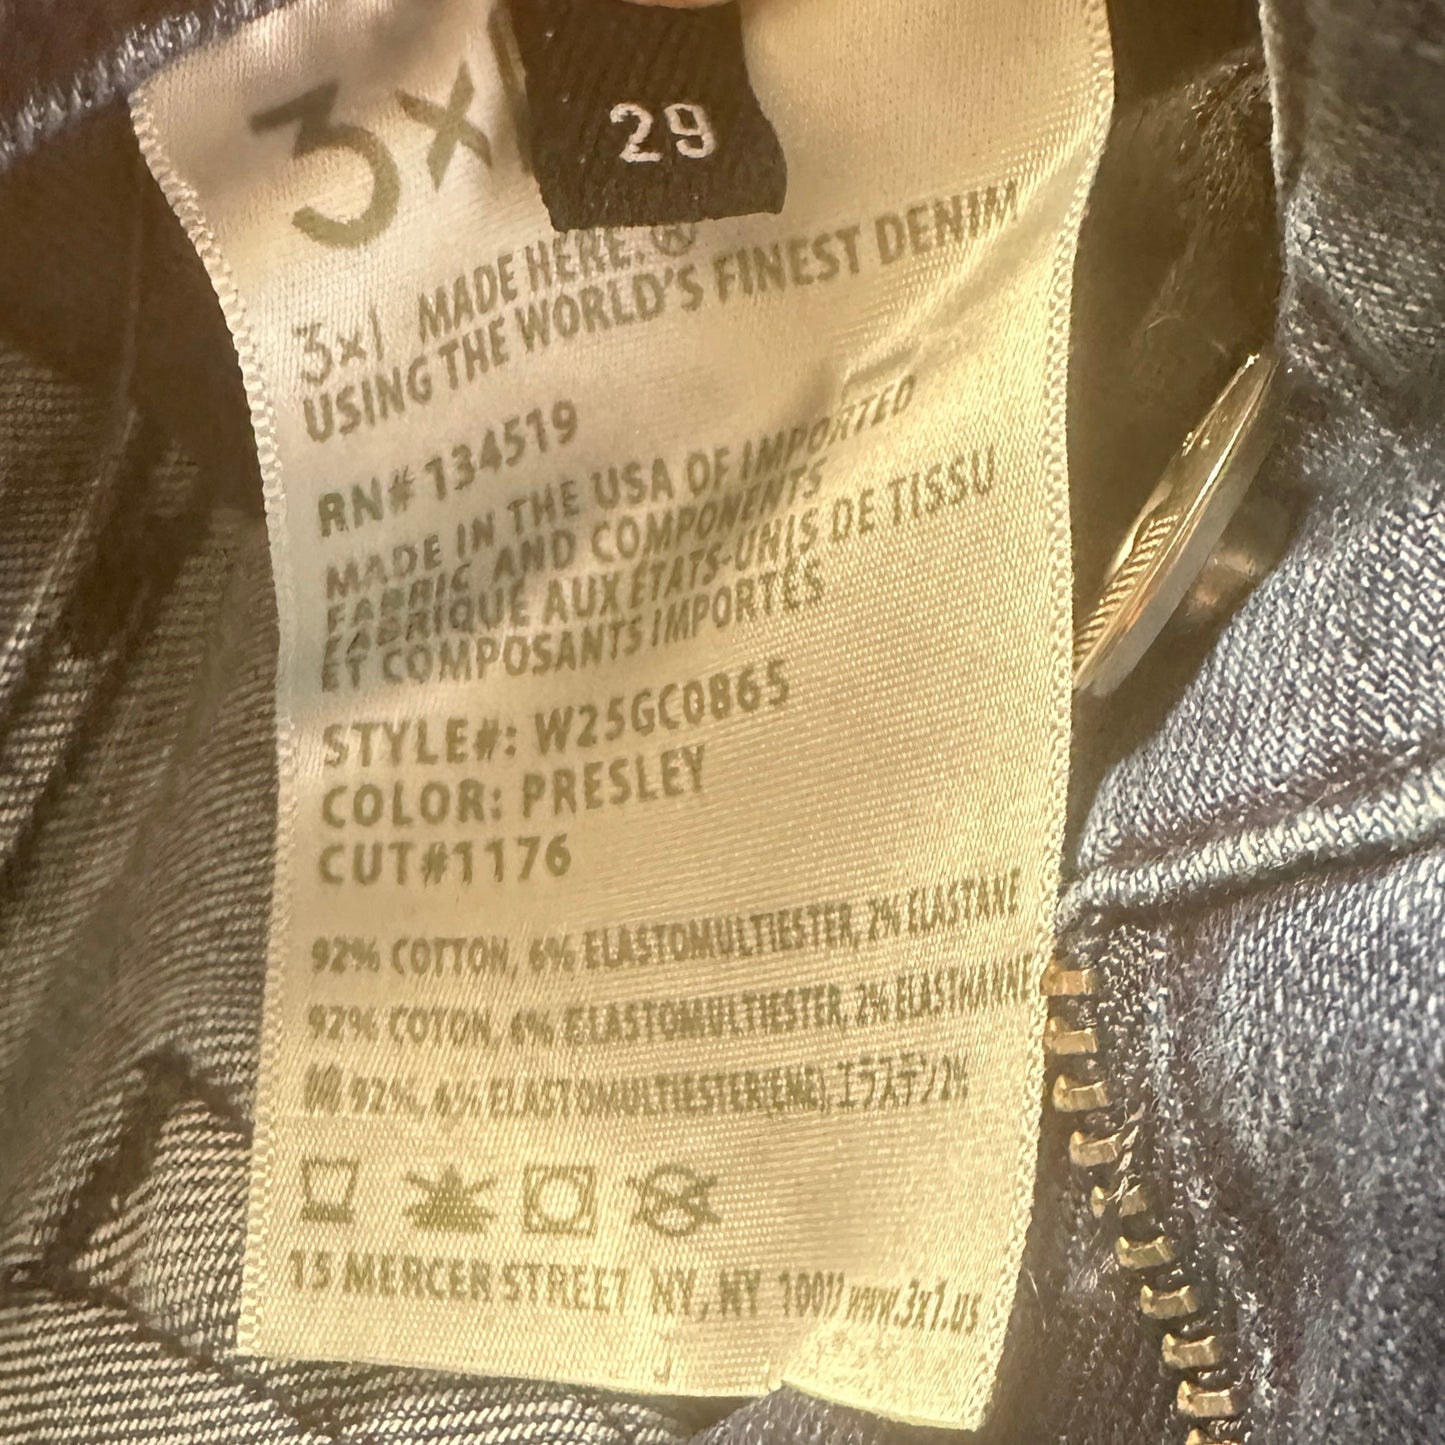 Presley Gusset Zip Jeans Cropped Denim Designer 3X1 Denim, Size 8/29